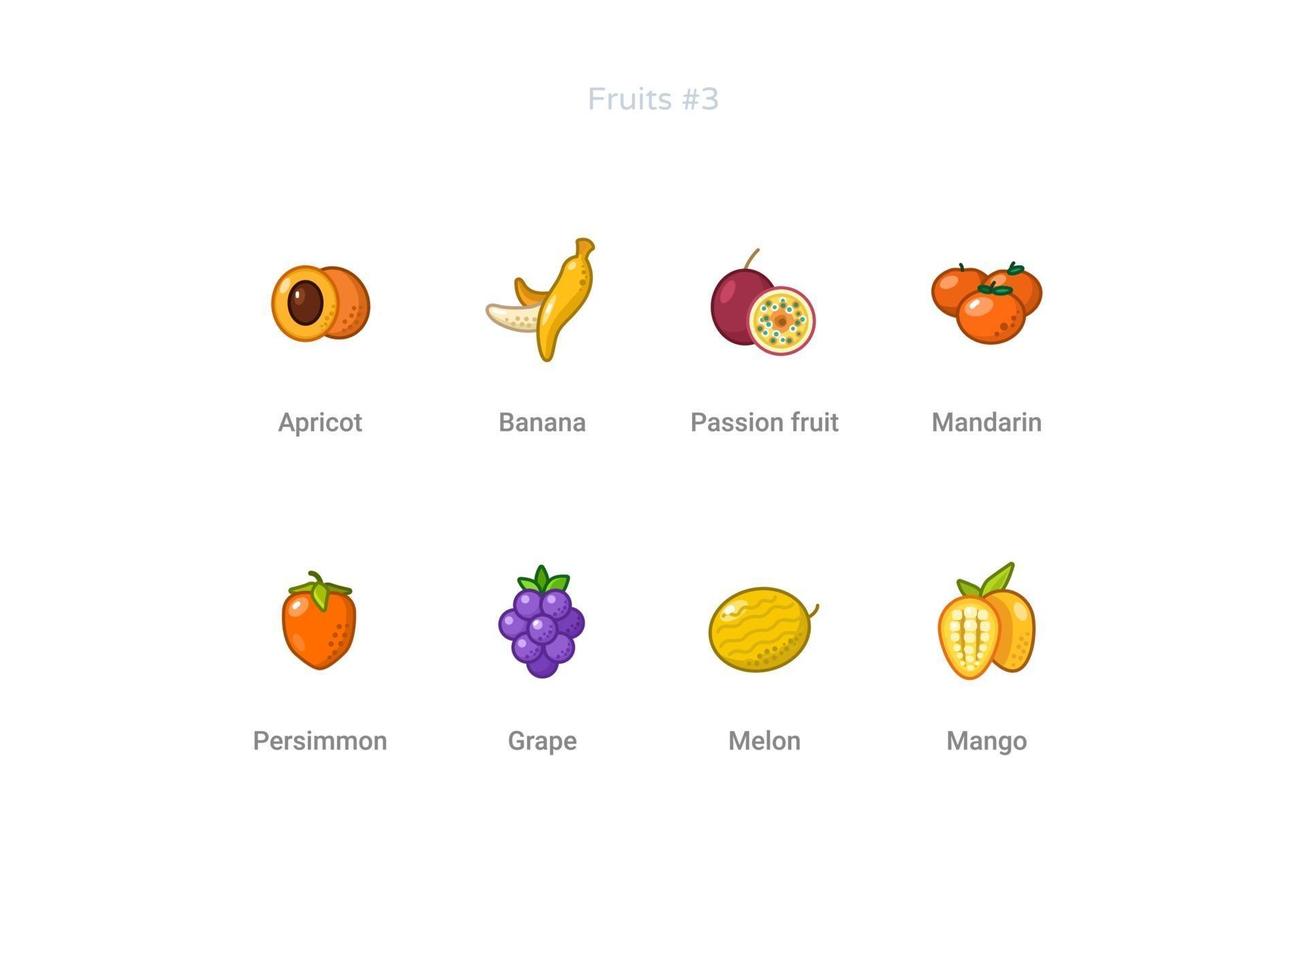 set di icone di frutta vettore